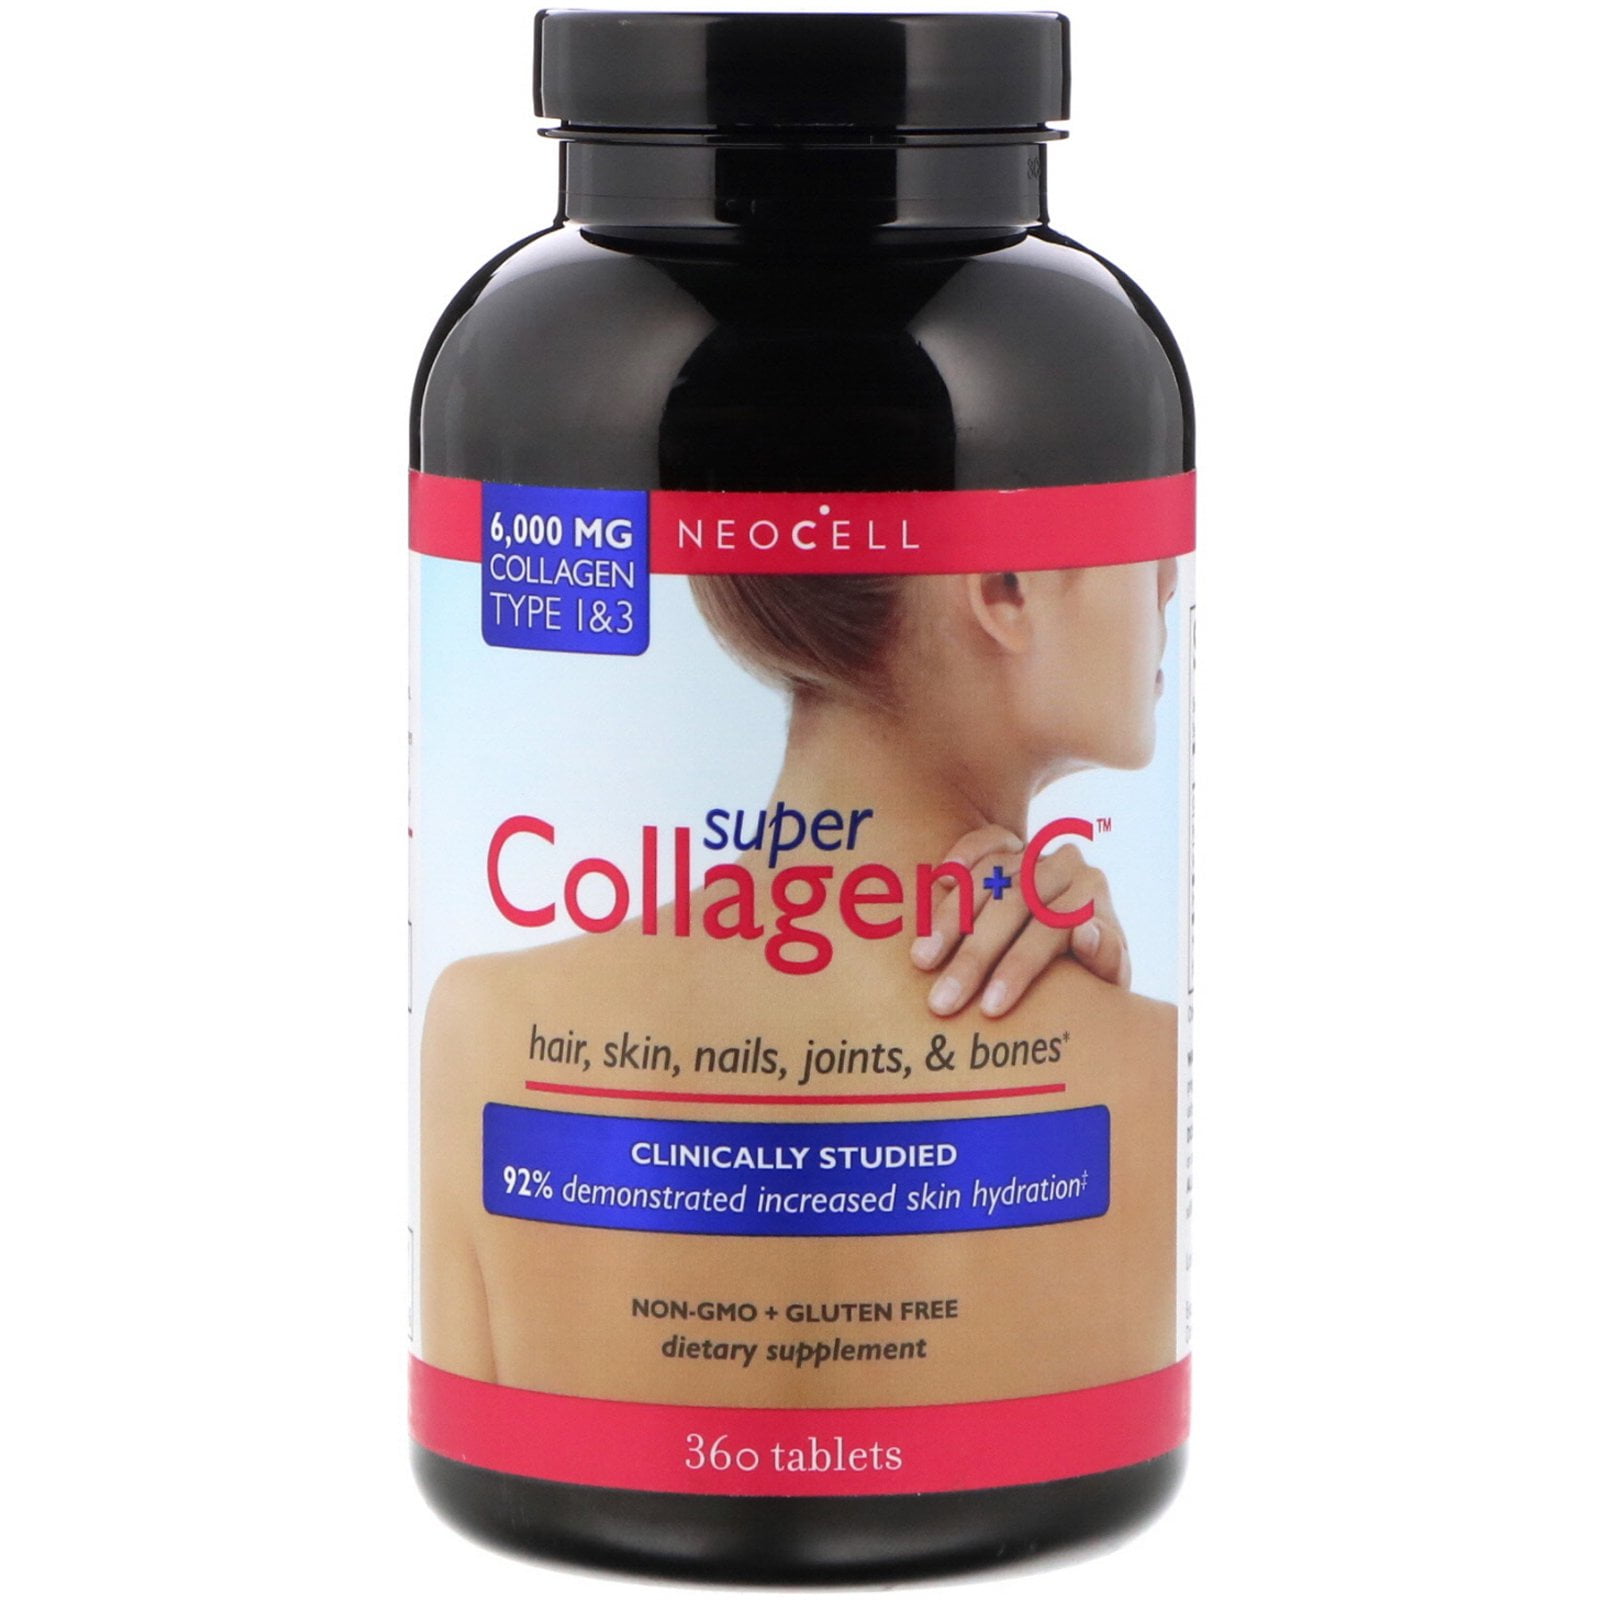 Super collagen